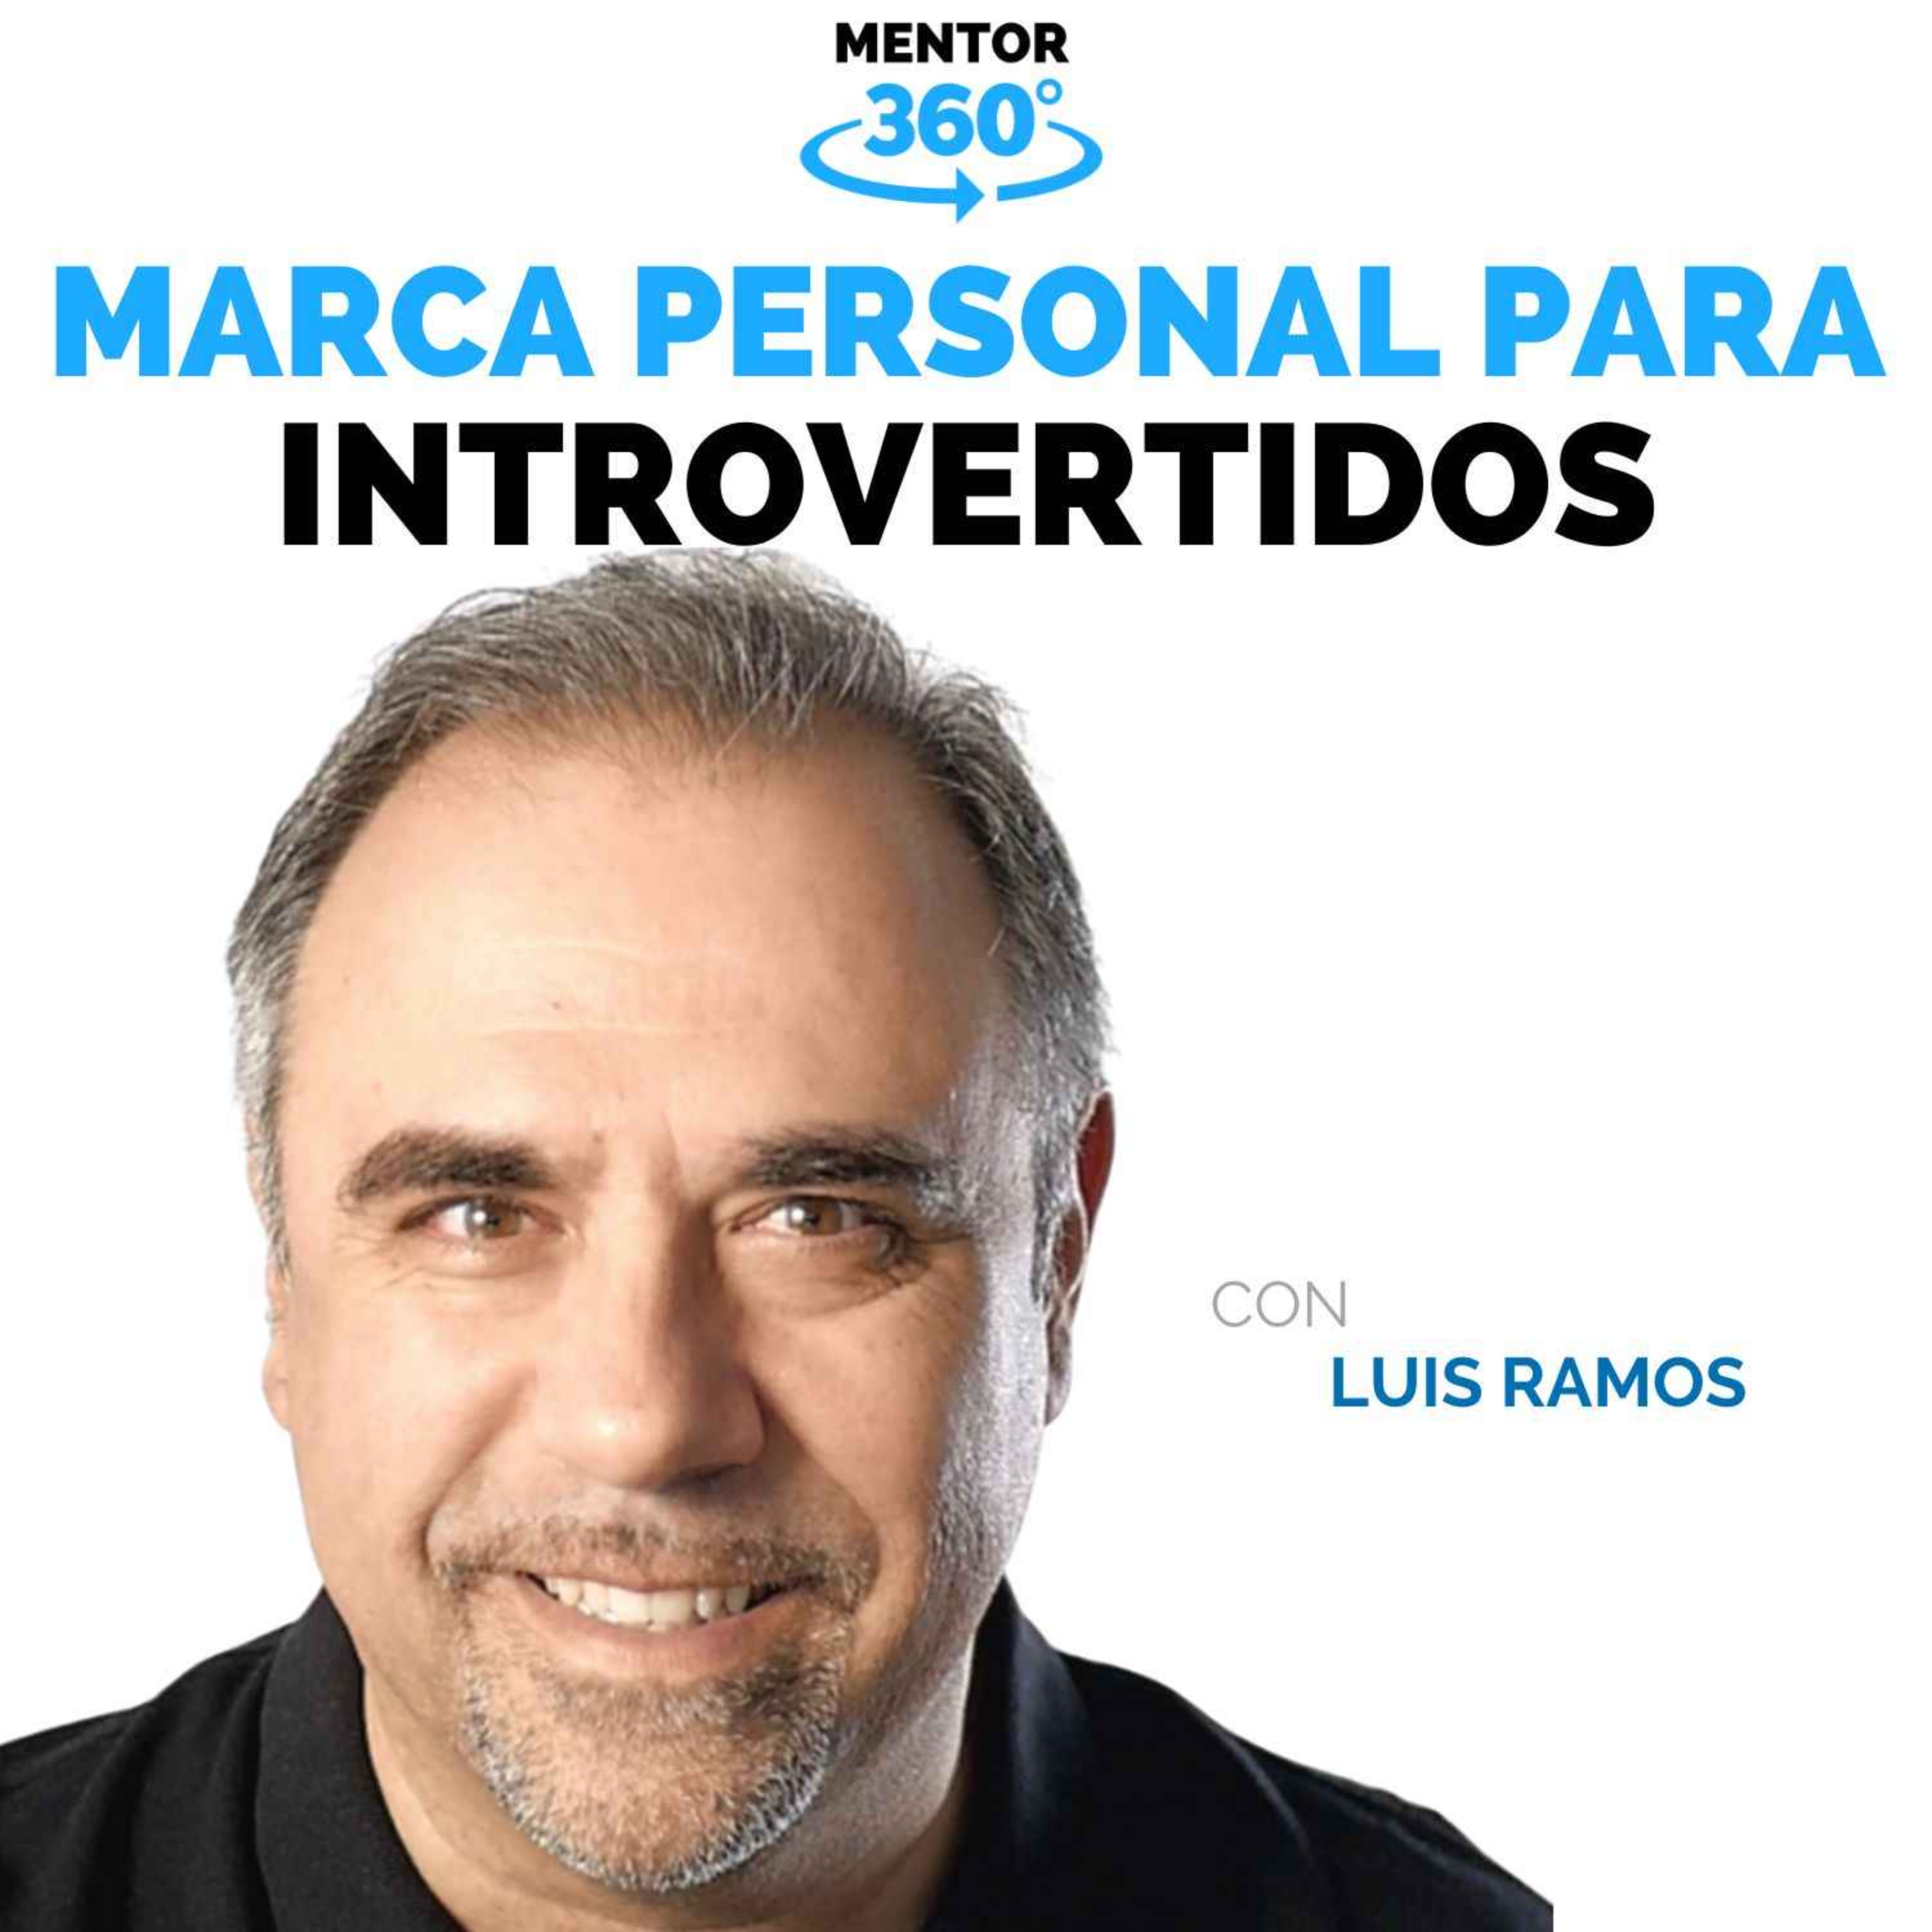 Marca Personal para Introvertidos - Luis Ramos - Marca Personal - MENTOR360